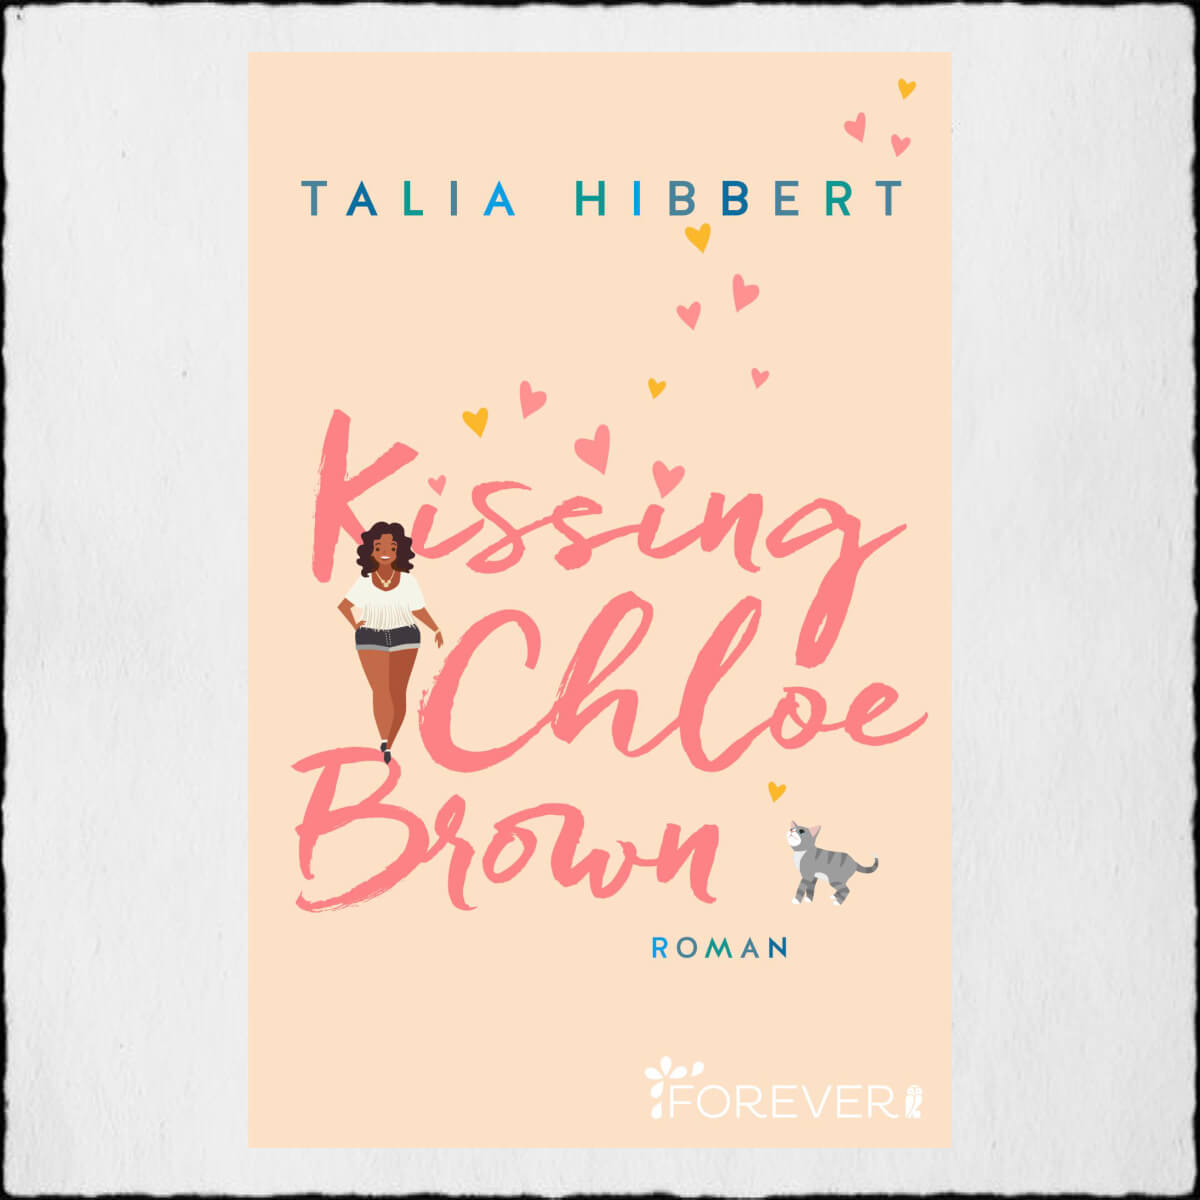 Talia Hibbert "Kissing Chloe Brown" ©2020 Forever by Ullstein Verlag